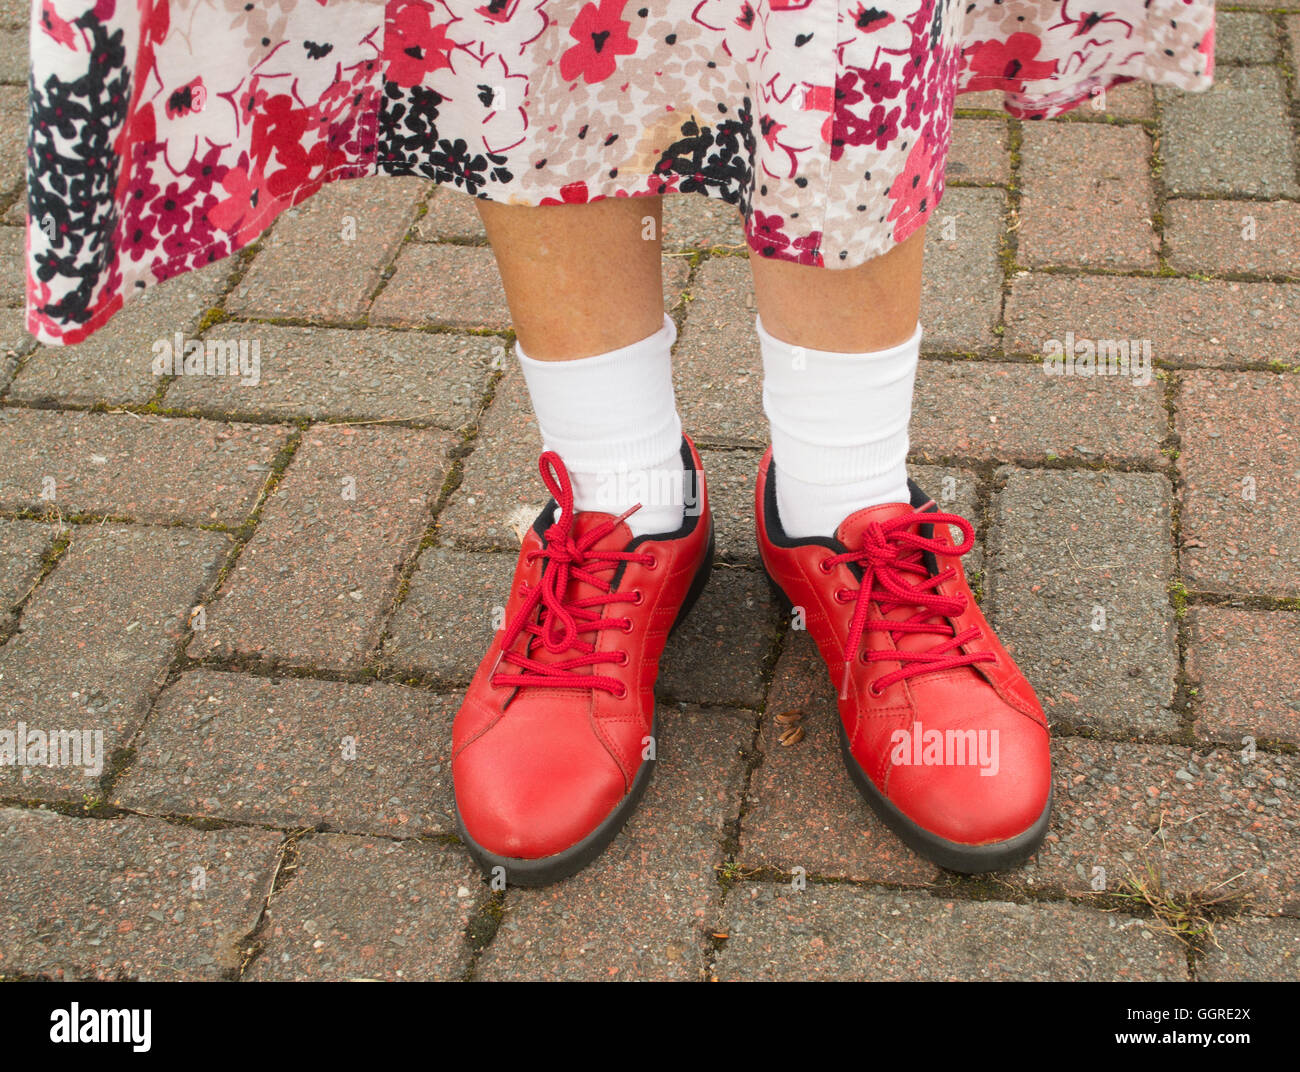 Femme portant des chaussures rouges et blanches socquettes Photo Stock -  Alamy